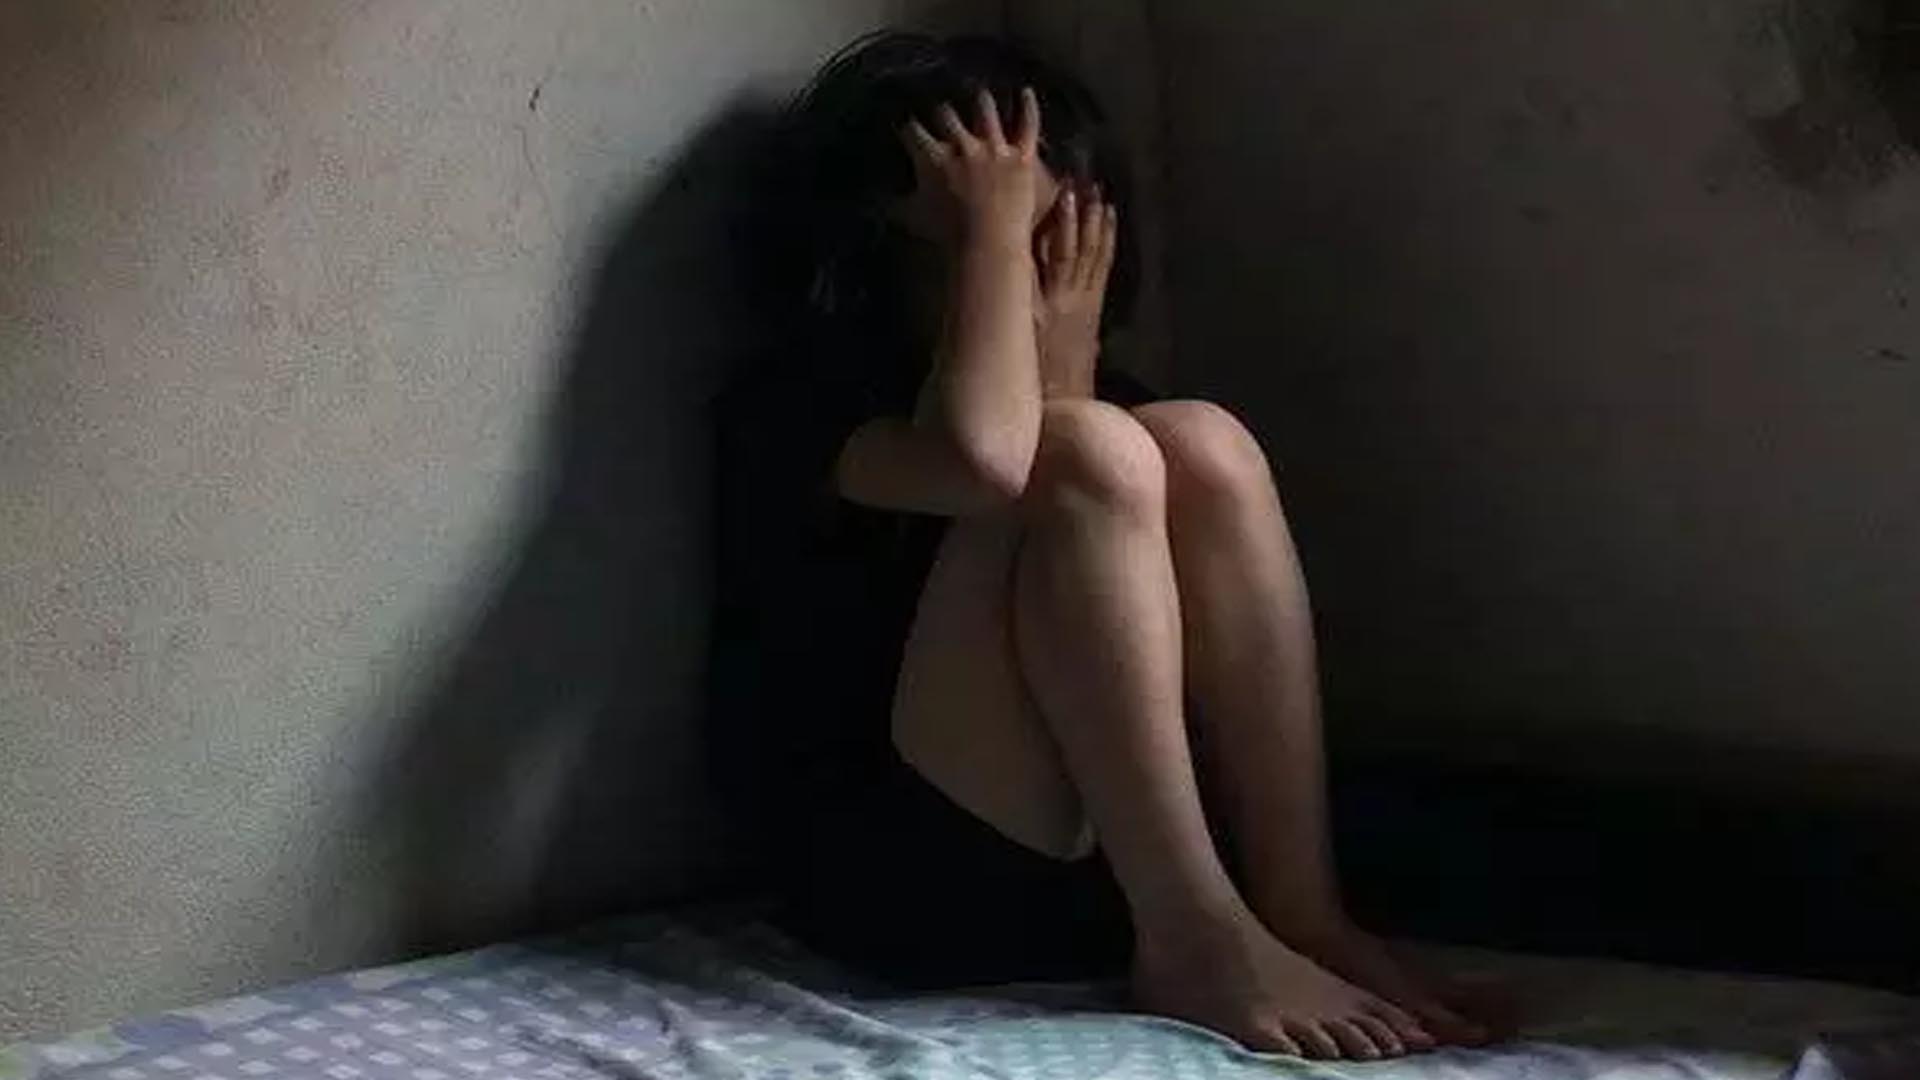 Raped after friendship on Instagram, case registered